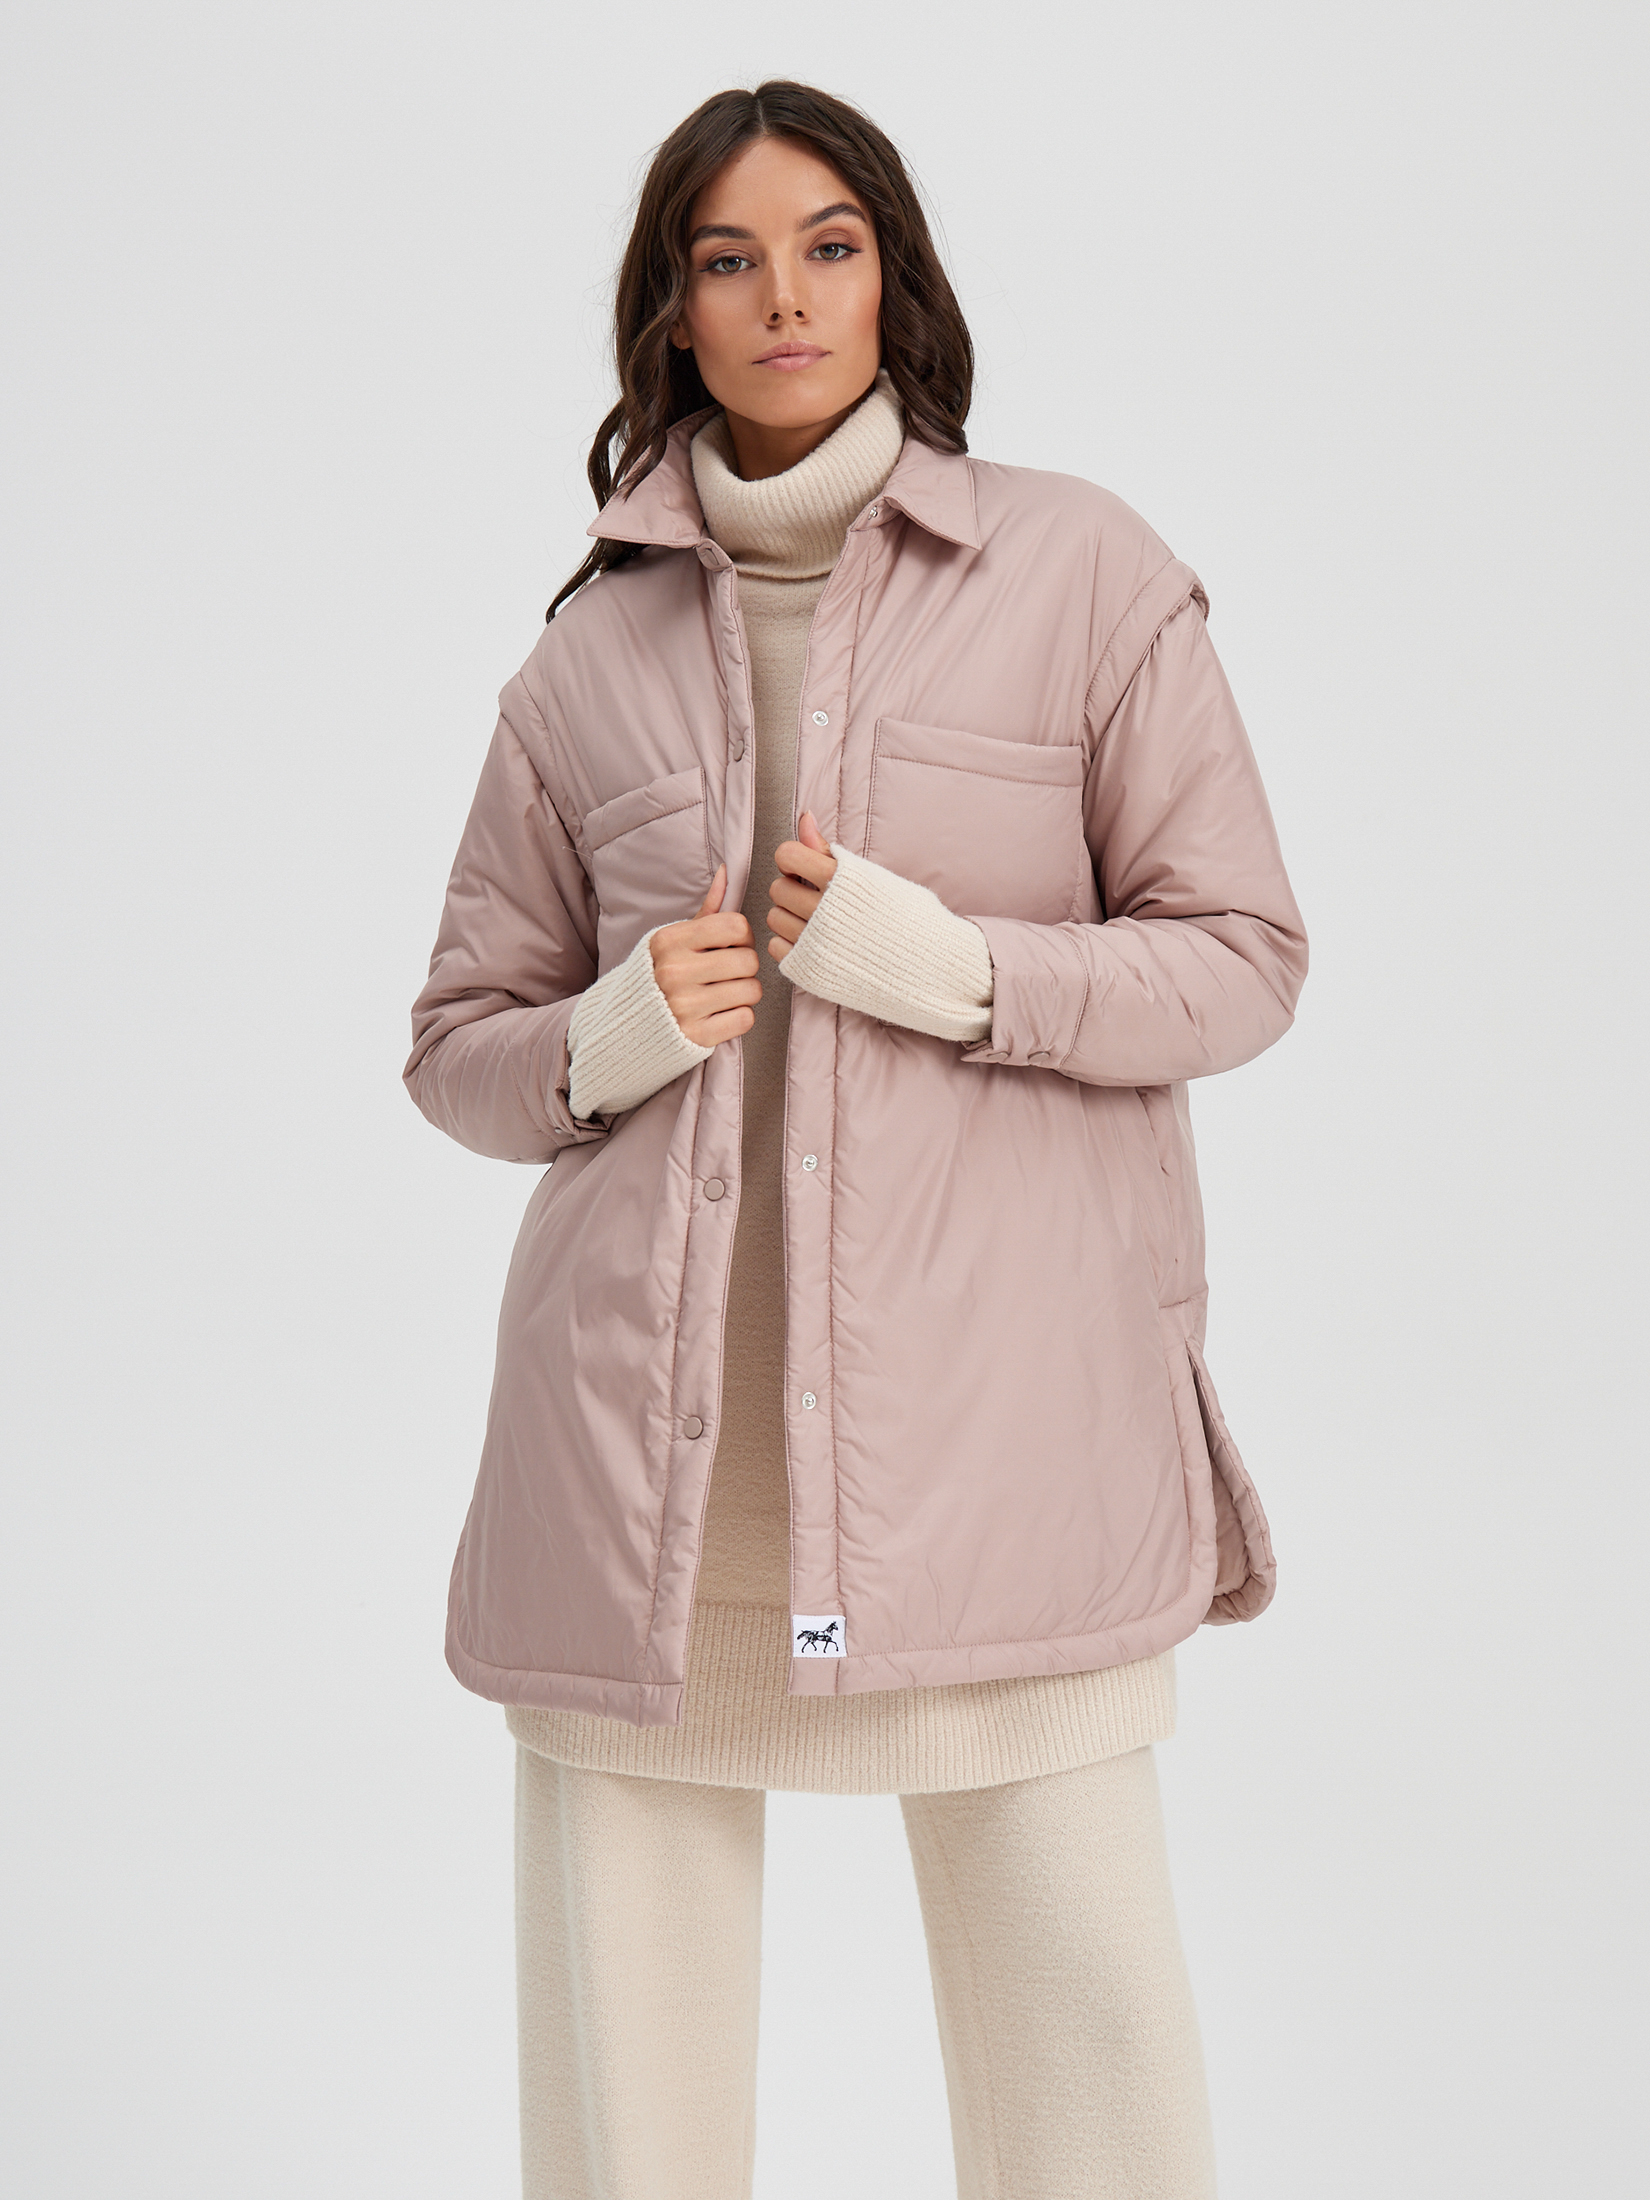 Куртка женская нежно-розовая цена и фото